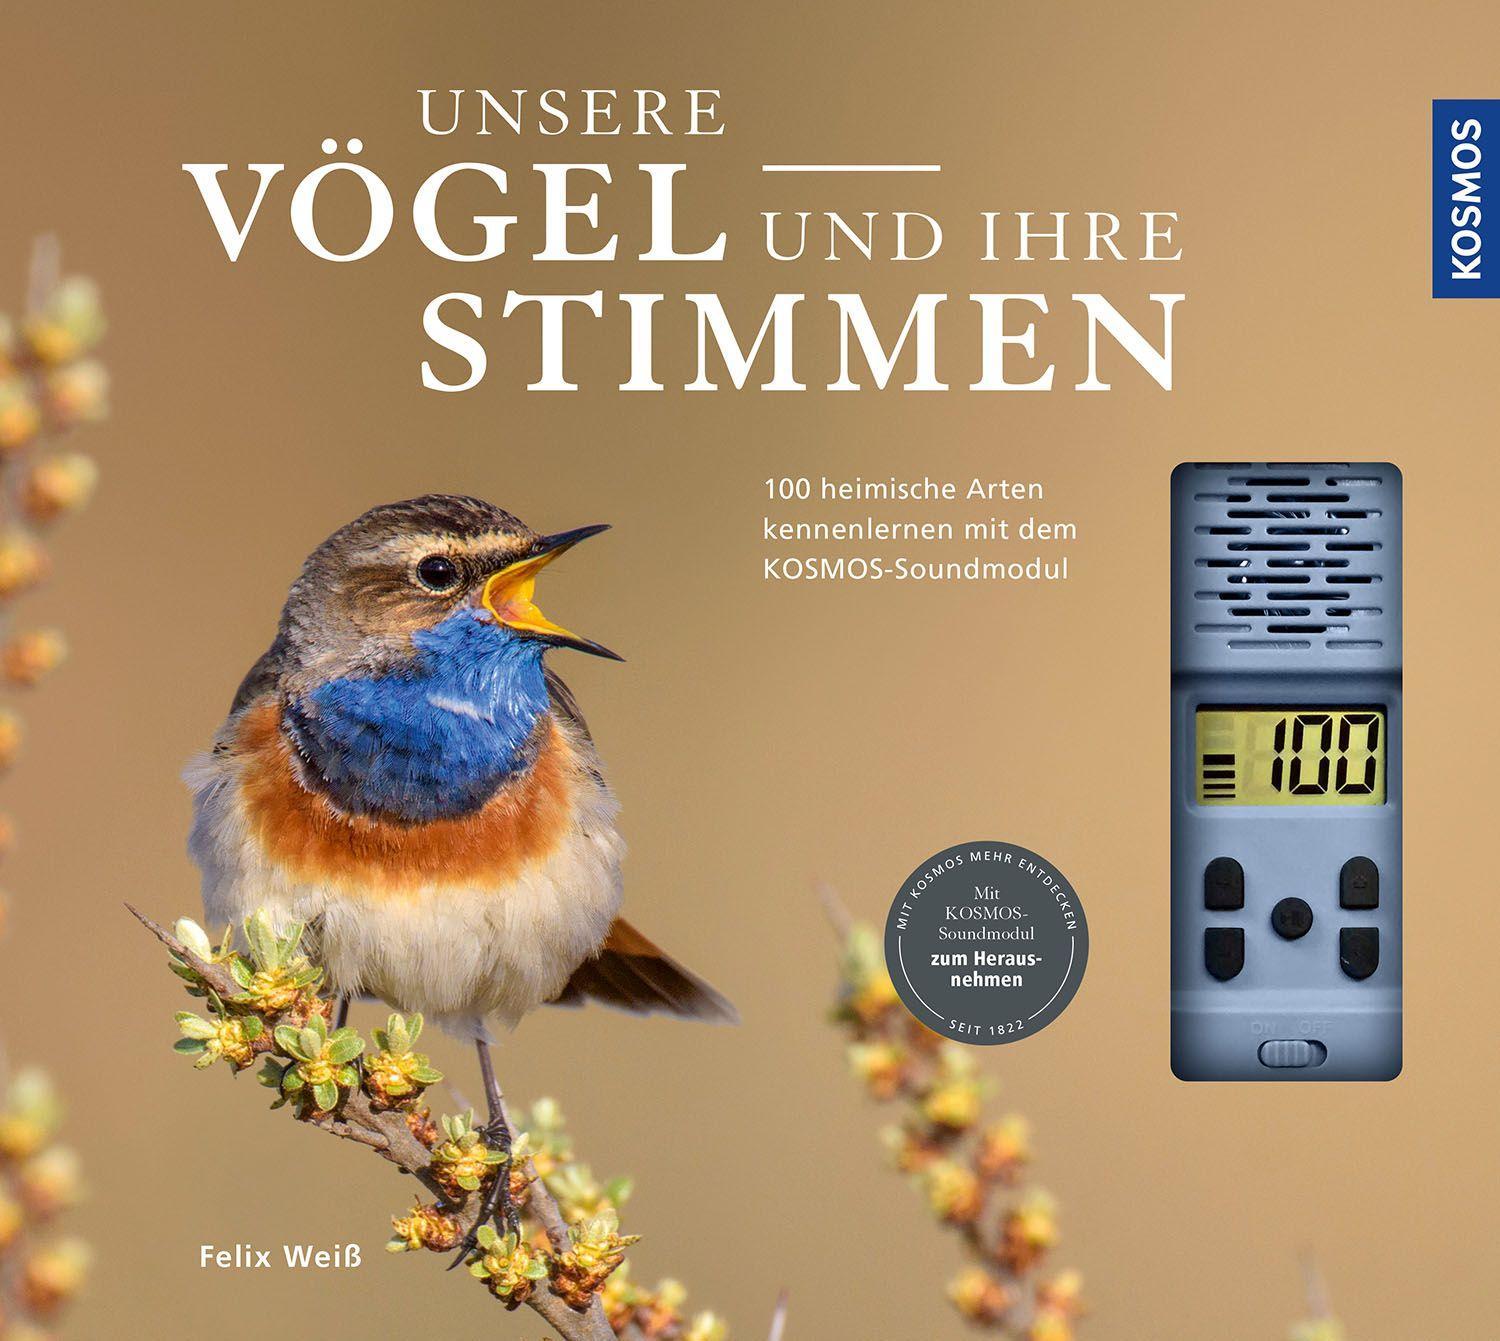 Unsere Vögel und ihre Stimmen 100 heimische Arten kennenlernen mit dem Kosmos-Soundmodul